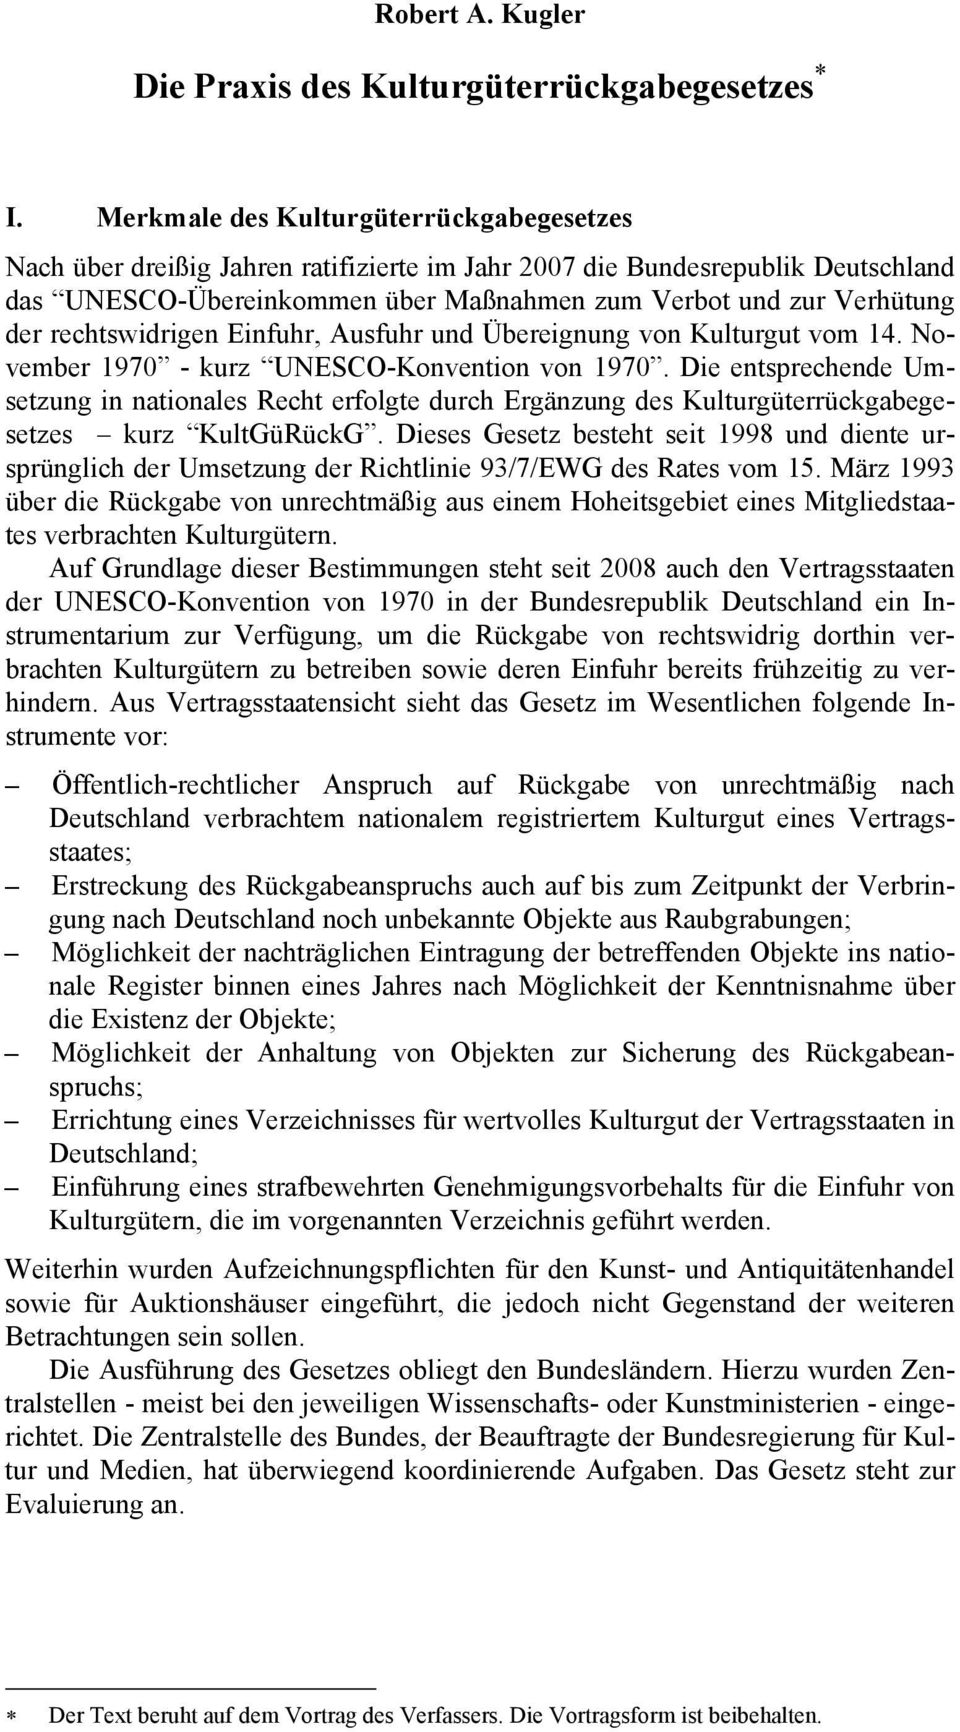 rechtswidrigen Einfuhr, Ausfuhr und Übereignung von Kulturgut vom 14. November 1970 - kurz UNESCO-Konvention von 1970.